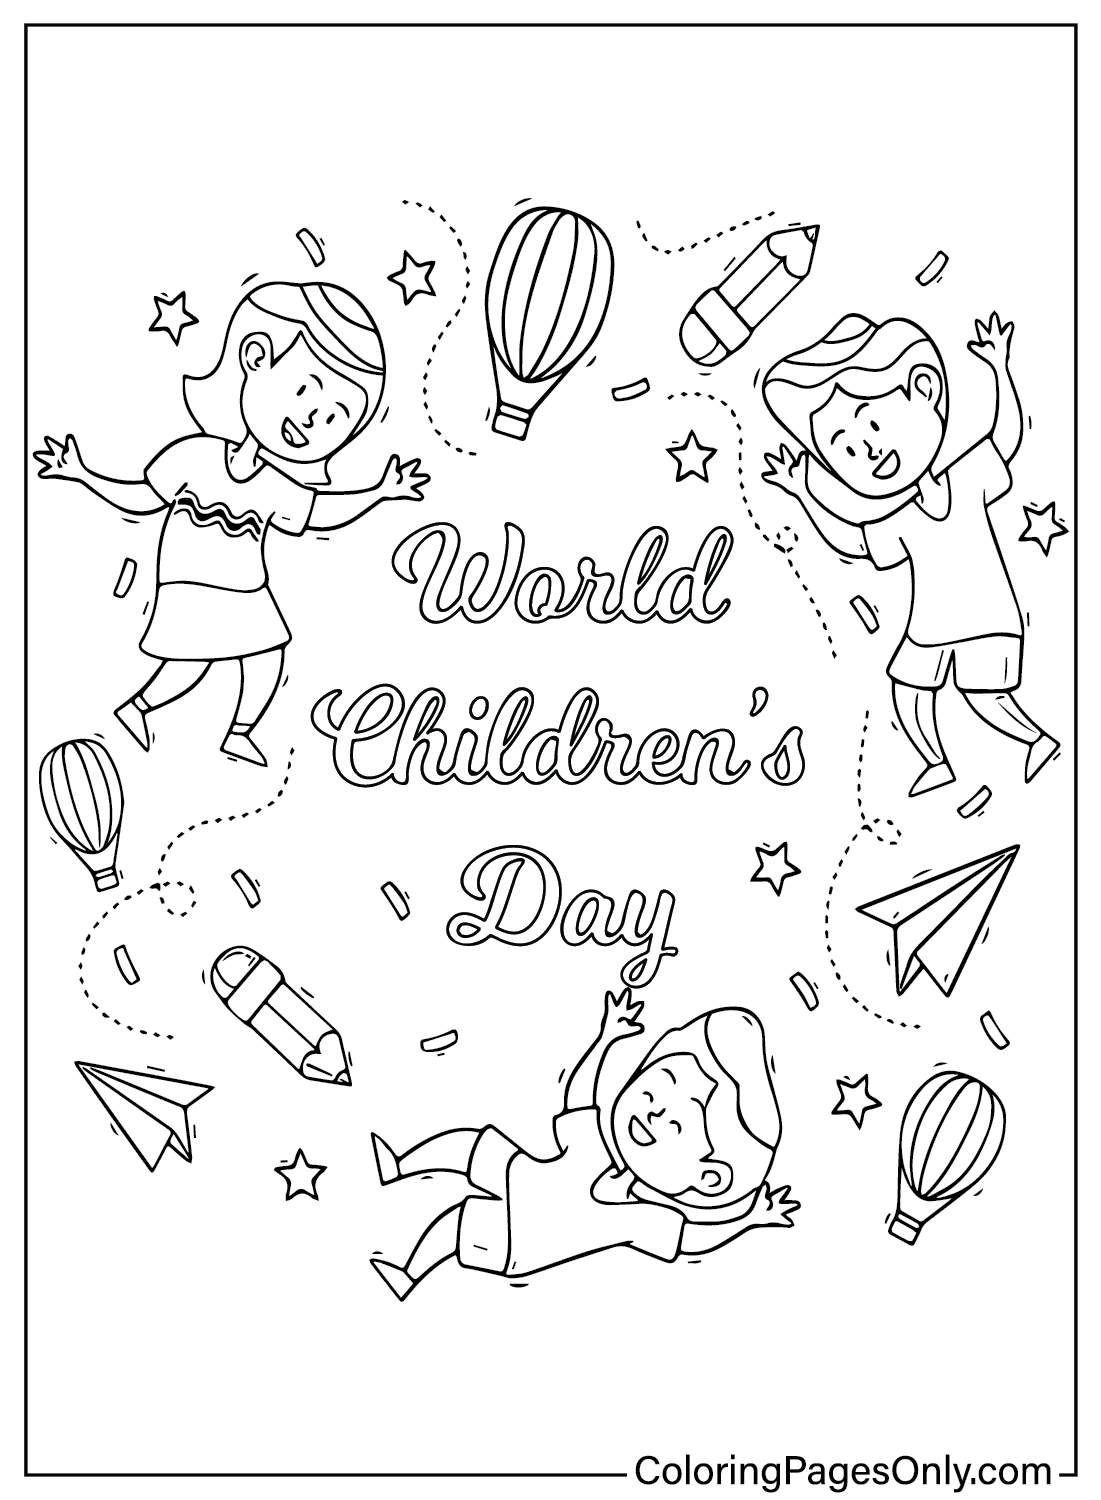 Pagina a colori per la Giornata mondiale dei bambini dalla Giornata dei bambini